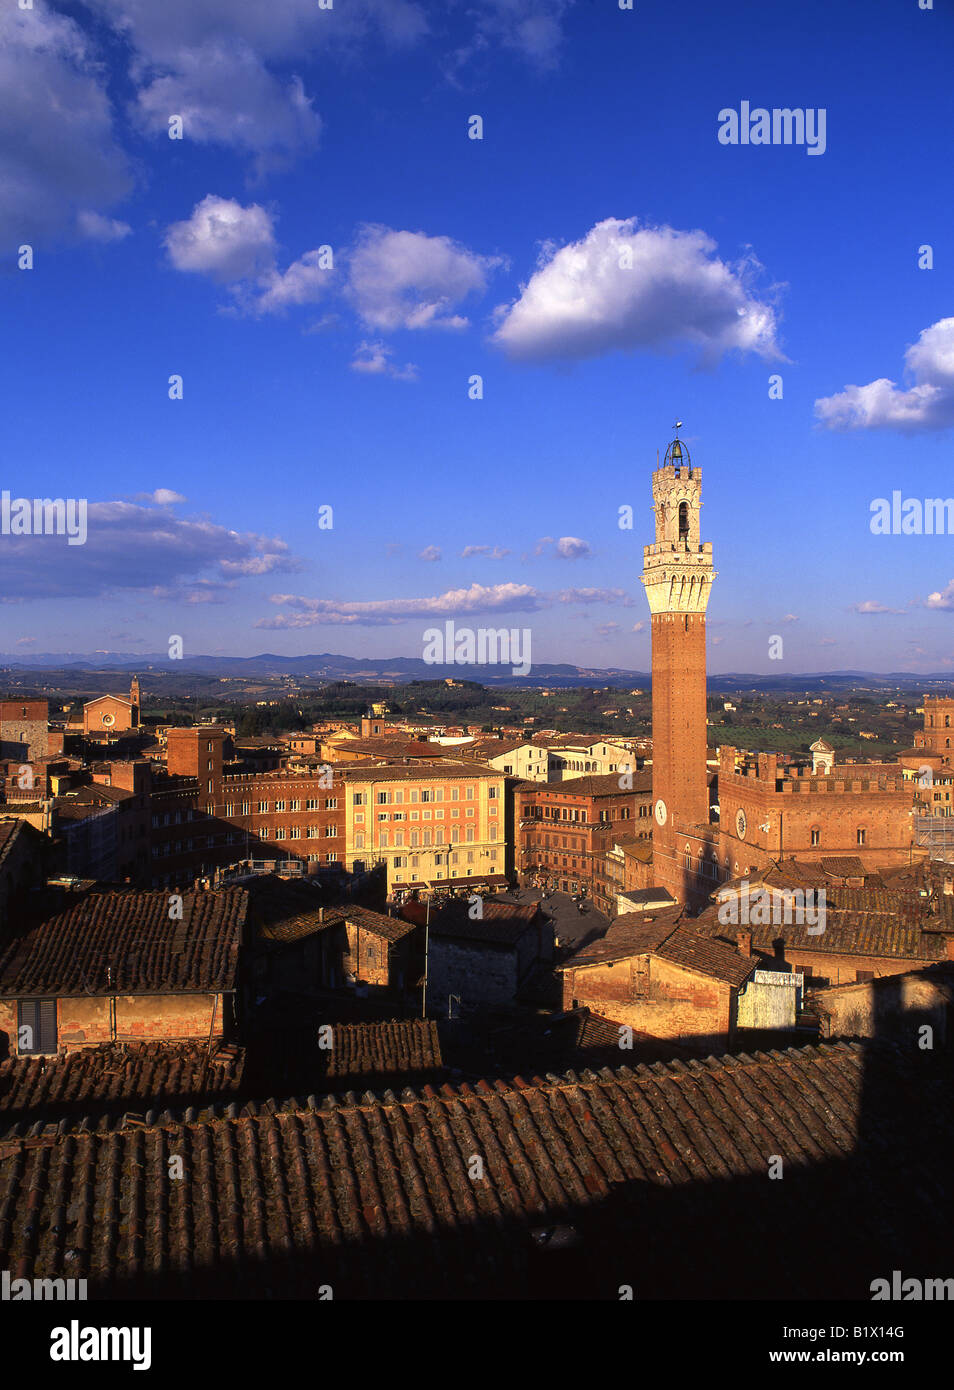 Torre del Mangia und Piazza del Campo im Blick auf den Sonnenuntergang vom Panorama im Museo dell'Opera del Duomo Siena Toskana Italien Stockfoto